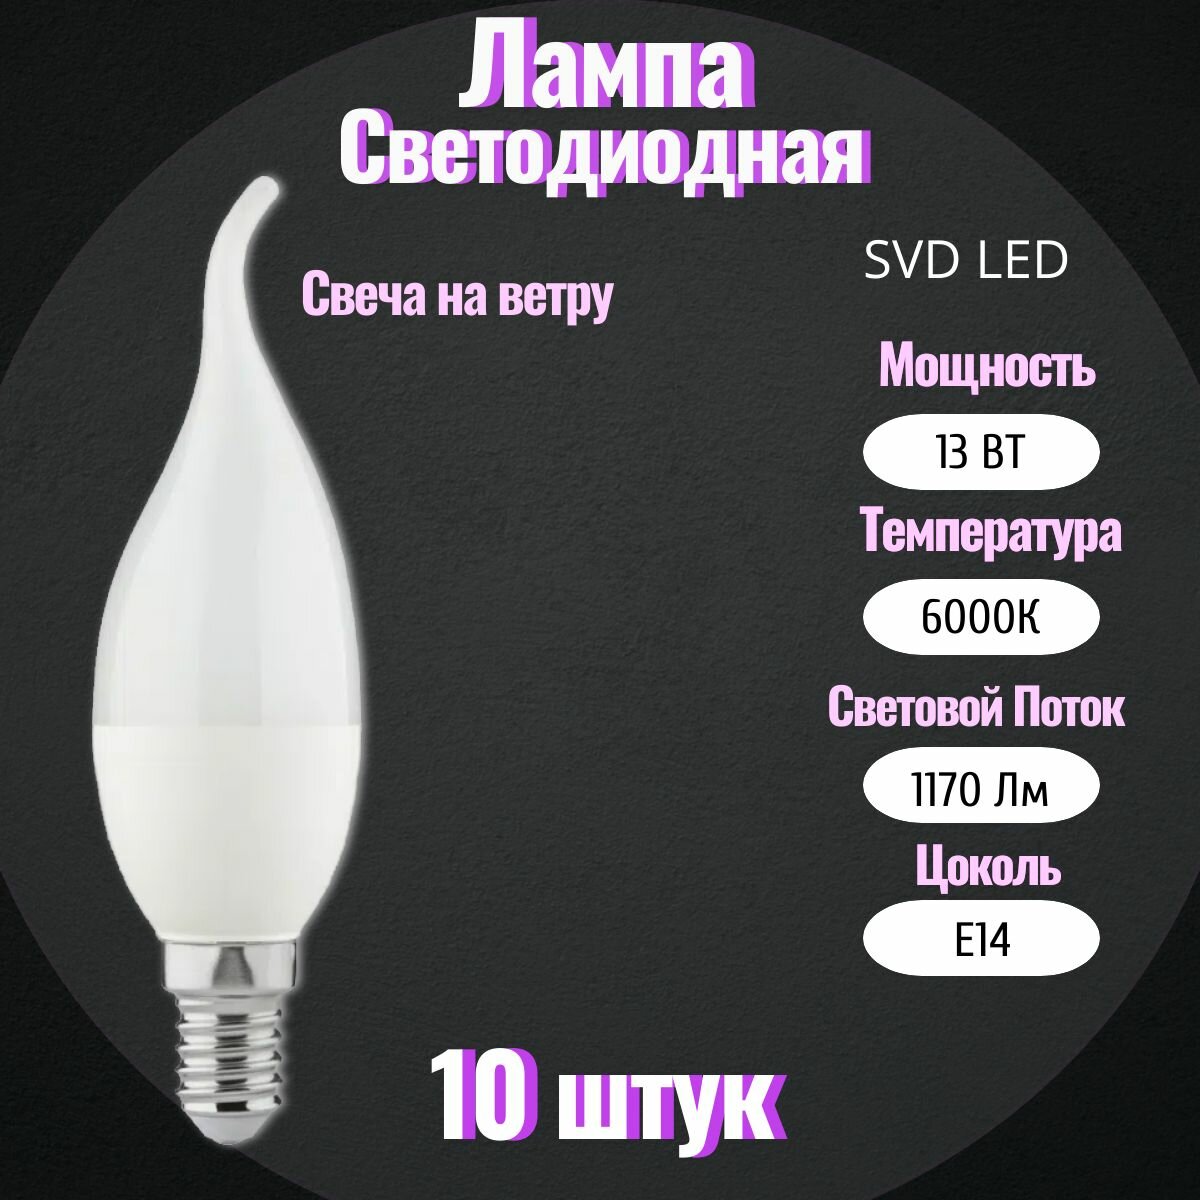 Лампа светодиодная (свеча на ветру), 13 Вт, 6K(холодный белый свет), цоколь E14 10шт